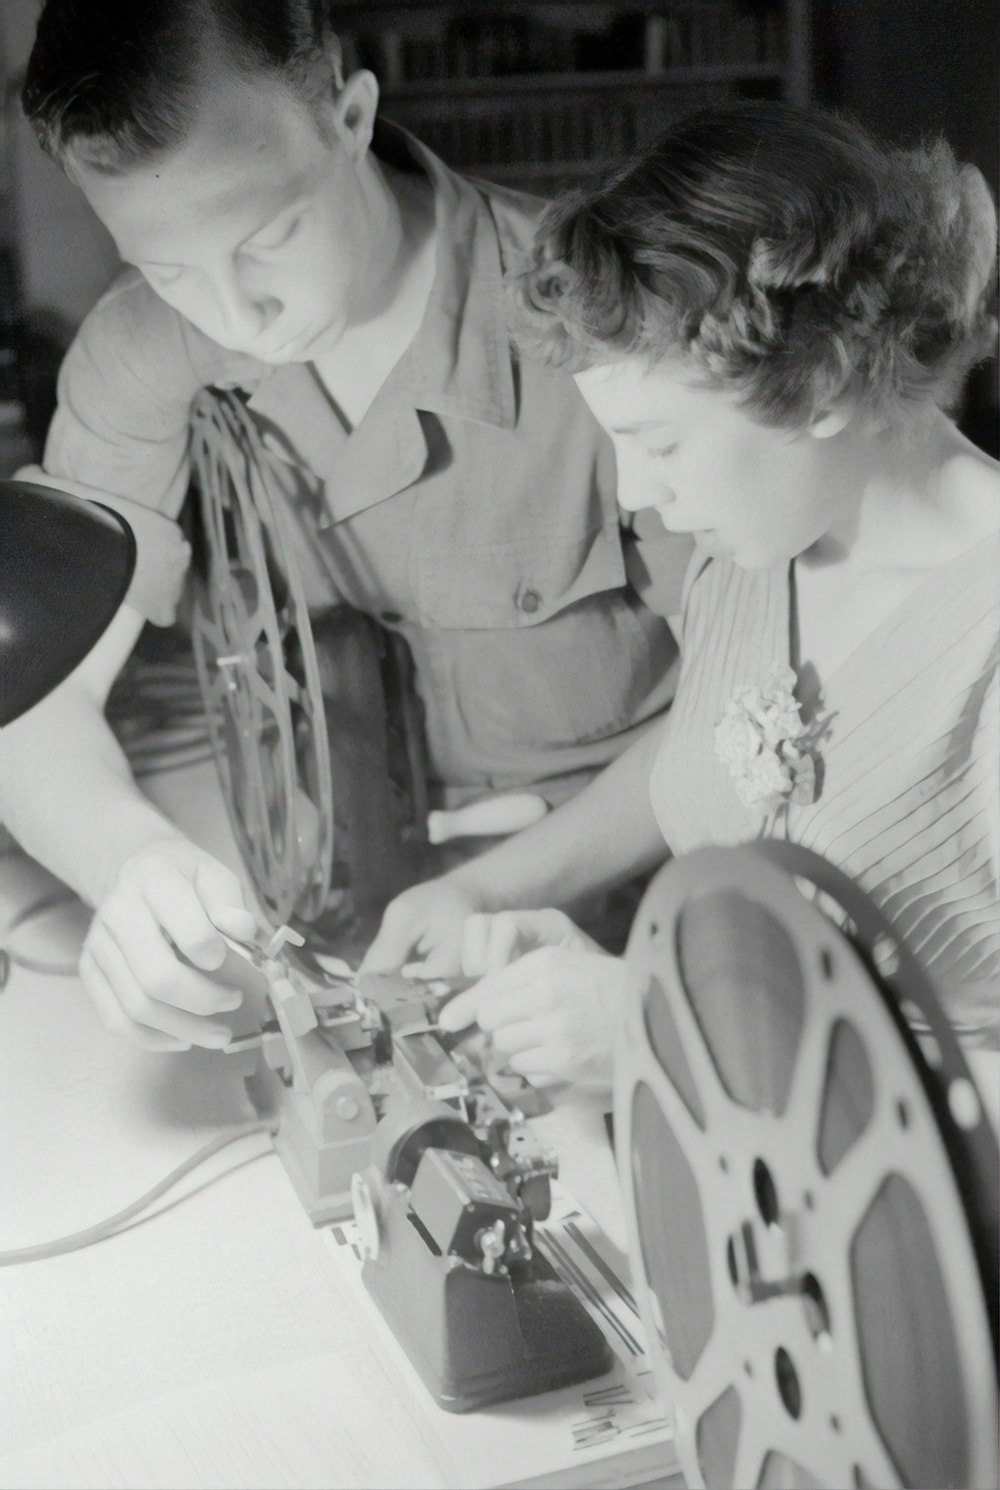 Photographie en niveaux de gris d’un homme aidant une femme tout en fixant une bobine de film